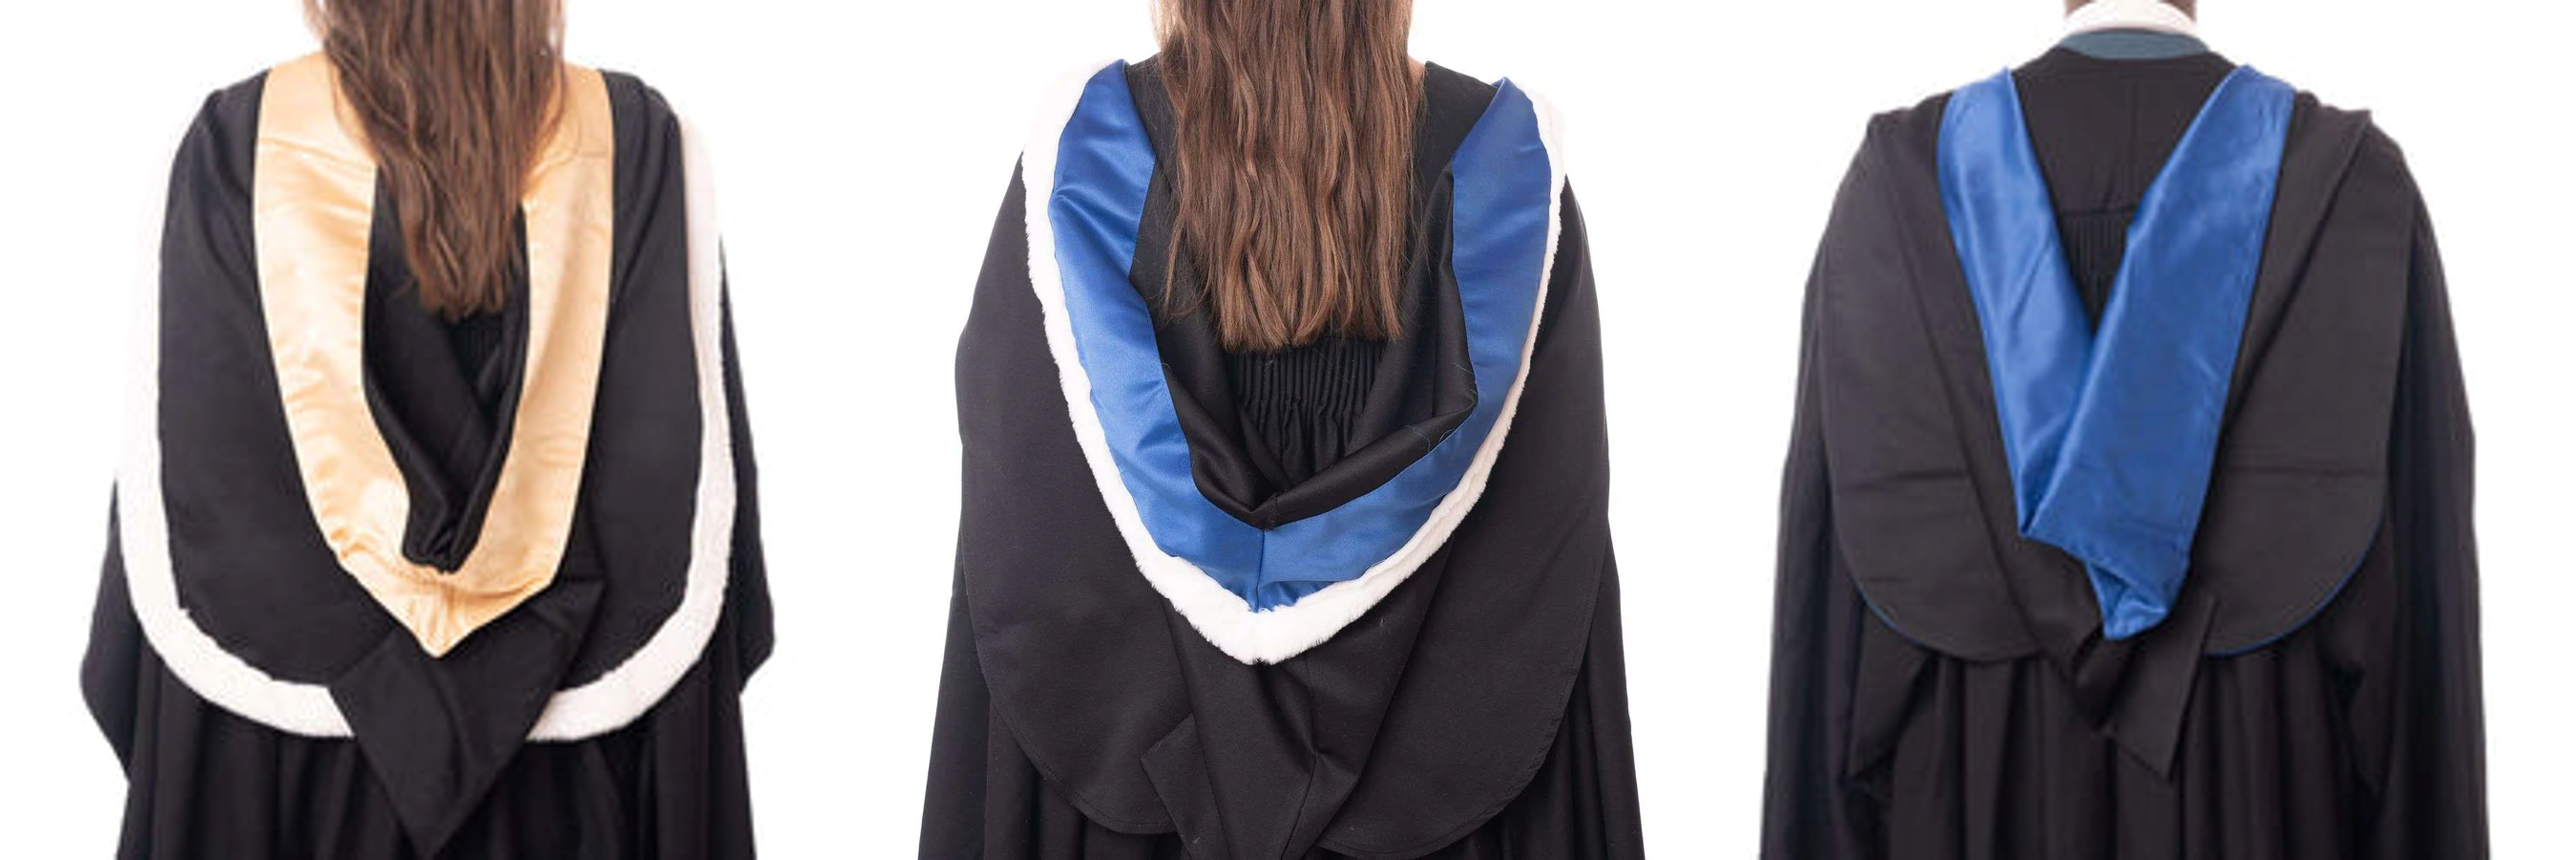 Graduation 2024 | Graduation gown, Academic gown, University graduation